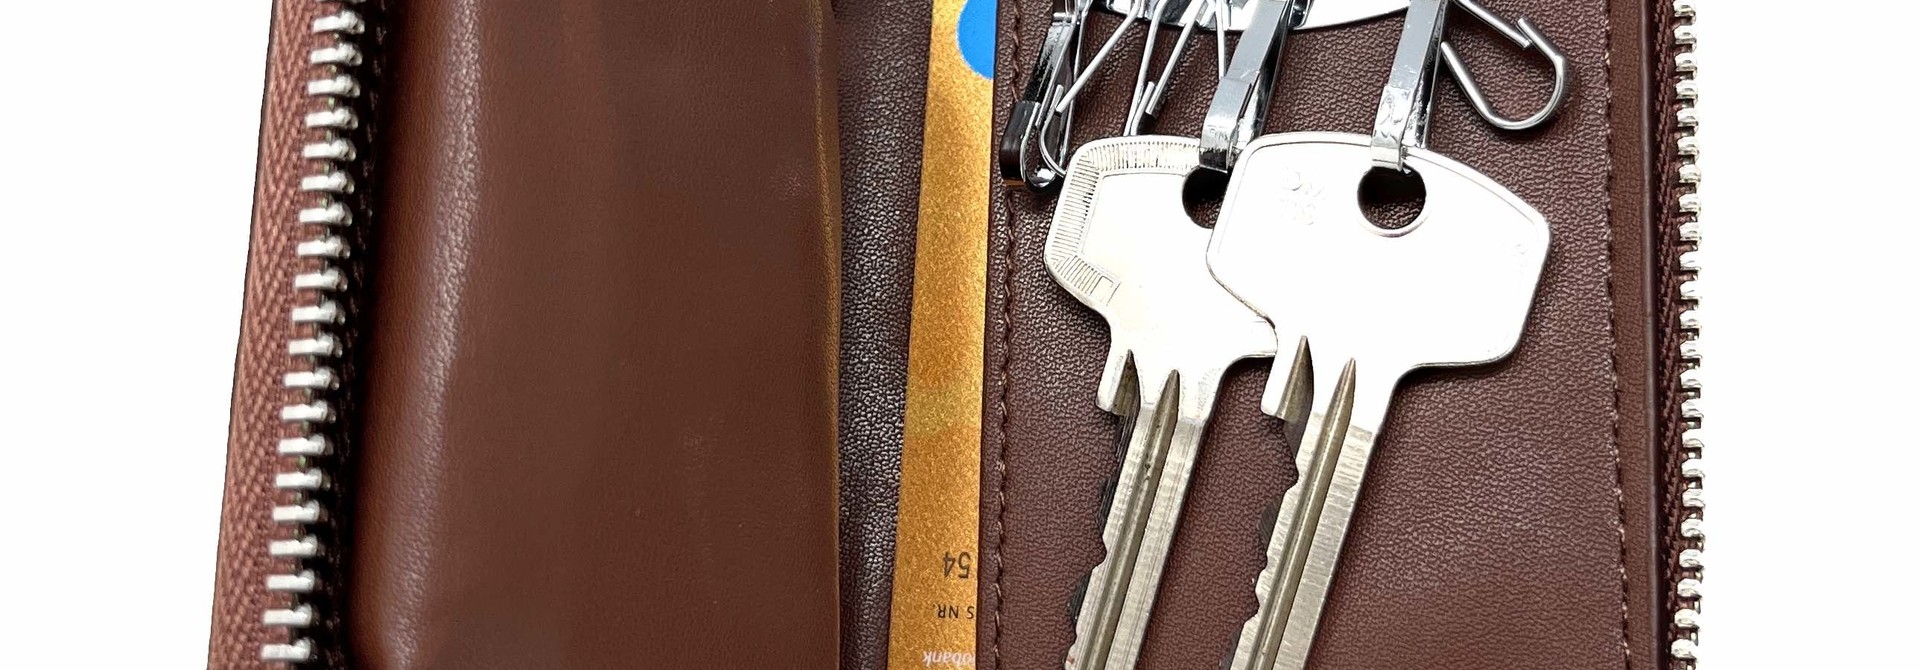 Leder-Schlüsseletui, 6 Schlüsselhaken, Kartenhalter, Geldschein-Brieftasche, Autoschlüsseltasche, Multifunktions-Schlüssel-Organizer - Braun